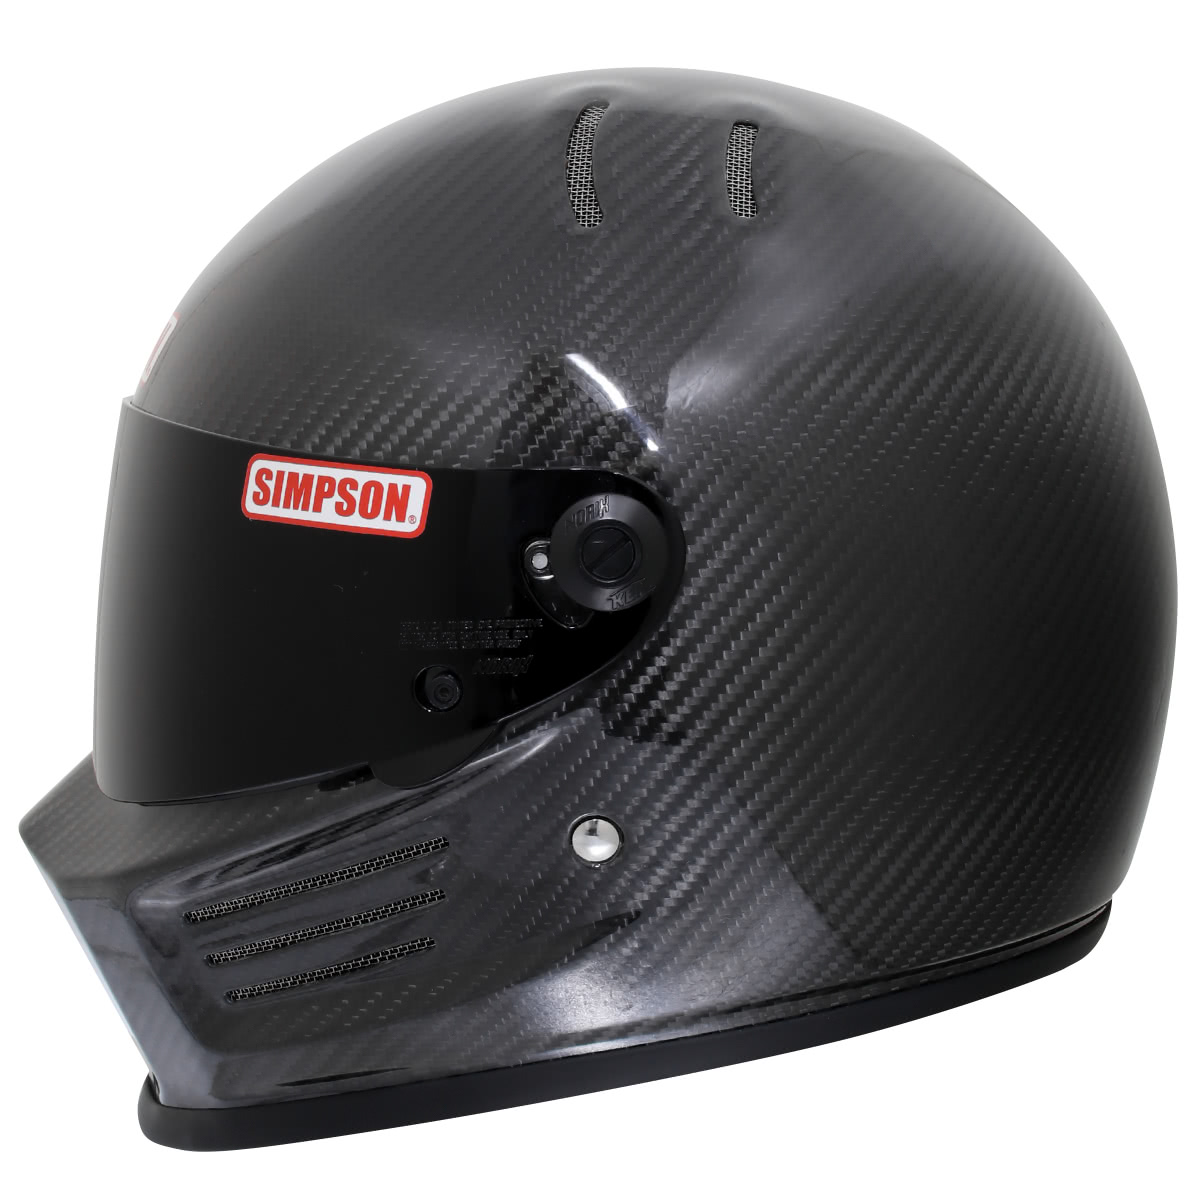 SIMPSON シンプソンヘルメット バンディットプロ BANDIT Pro カーボン